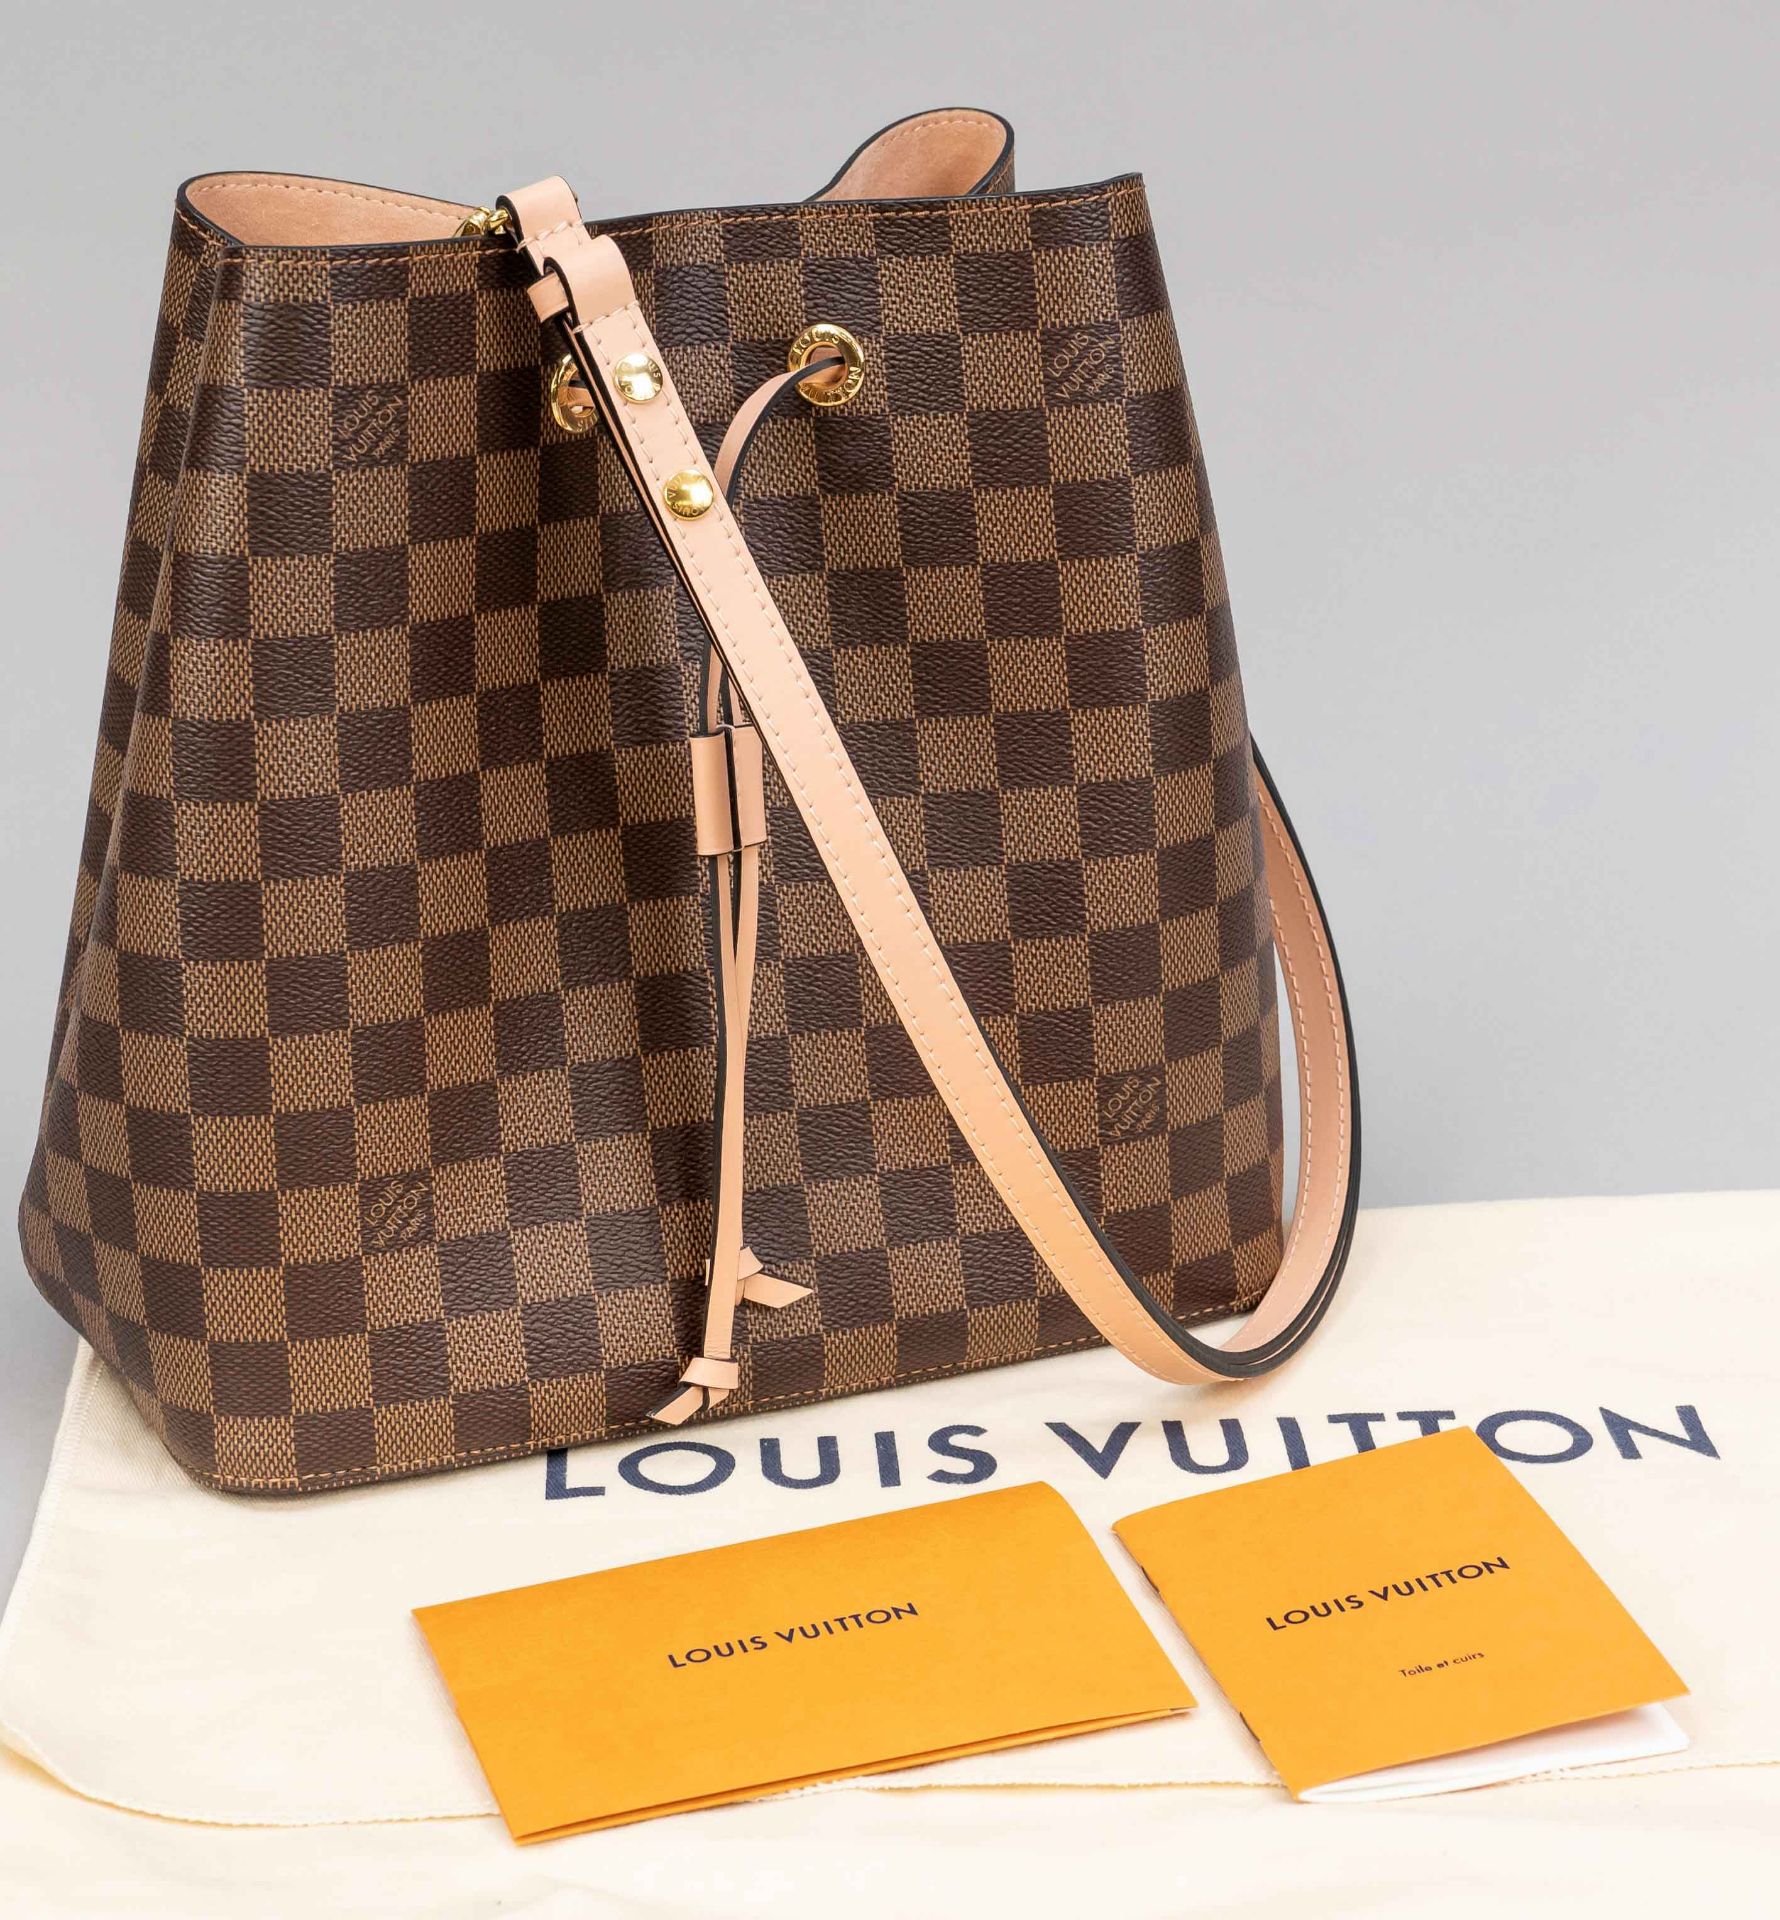 Louis Vuitton, NéoNoé MM Damier Ebene Canvas Bag in Venus Pink, brown-checked rubberized cotton